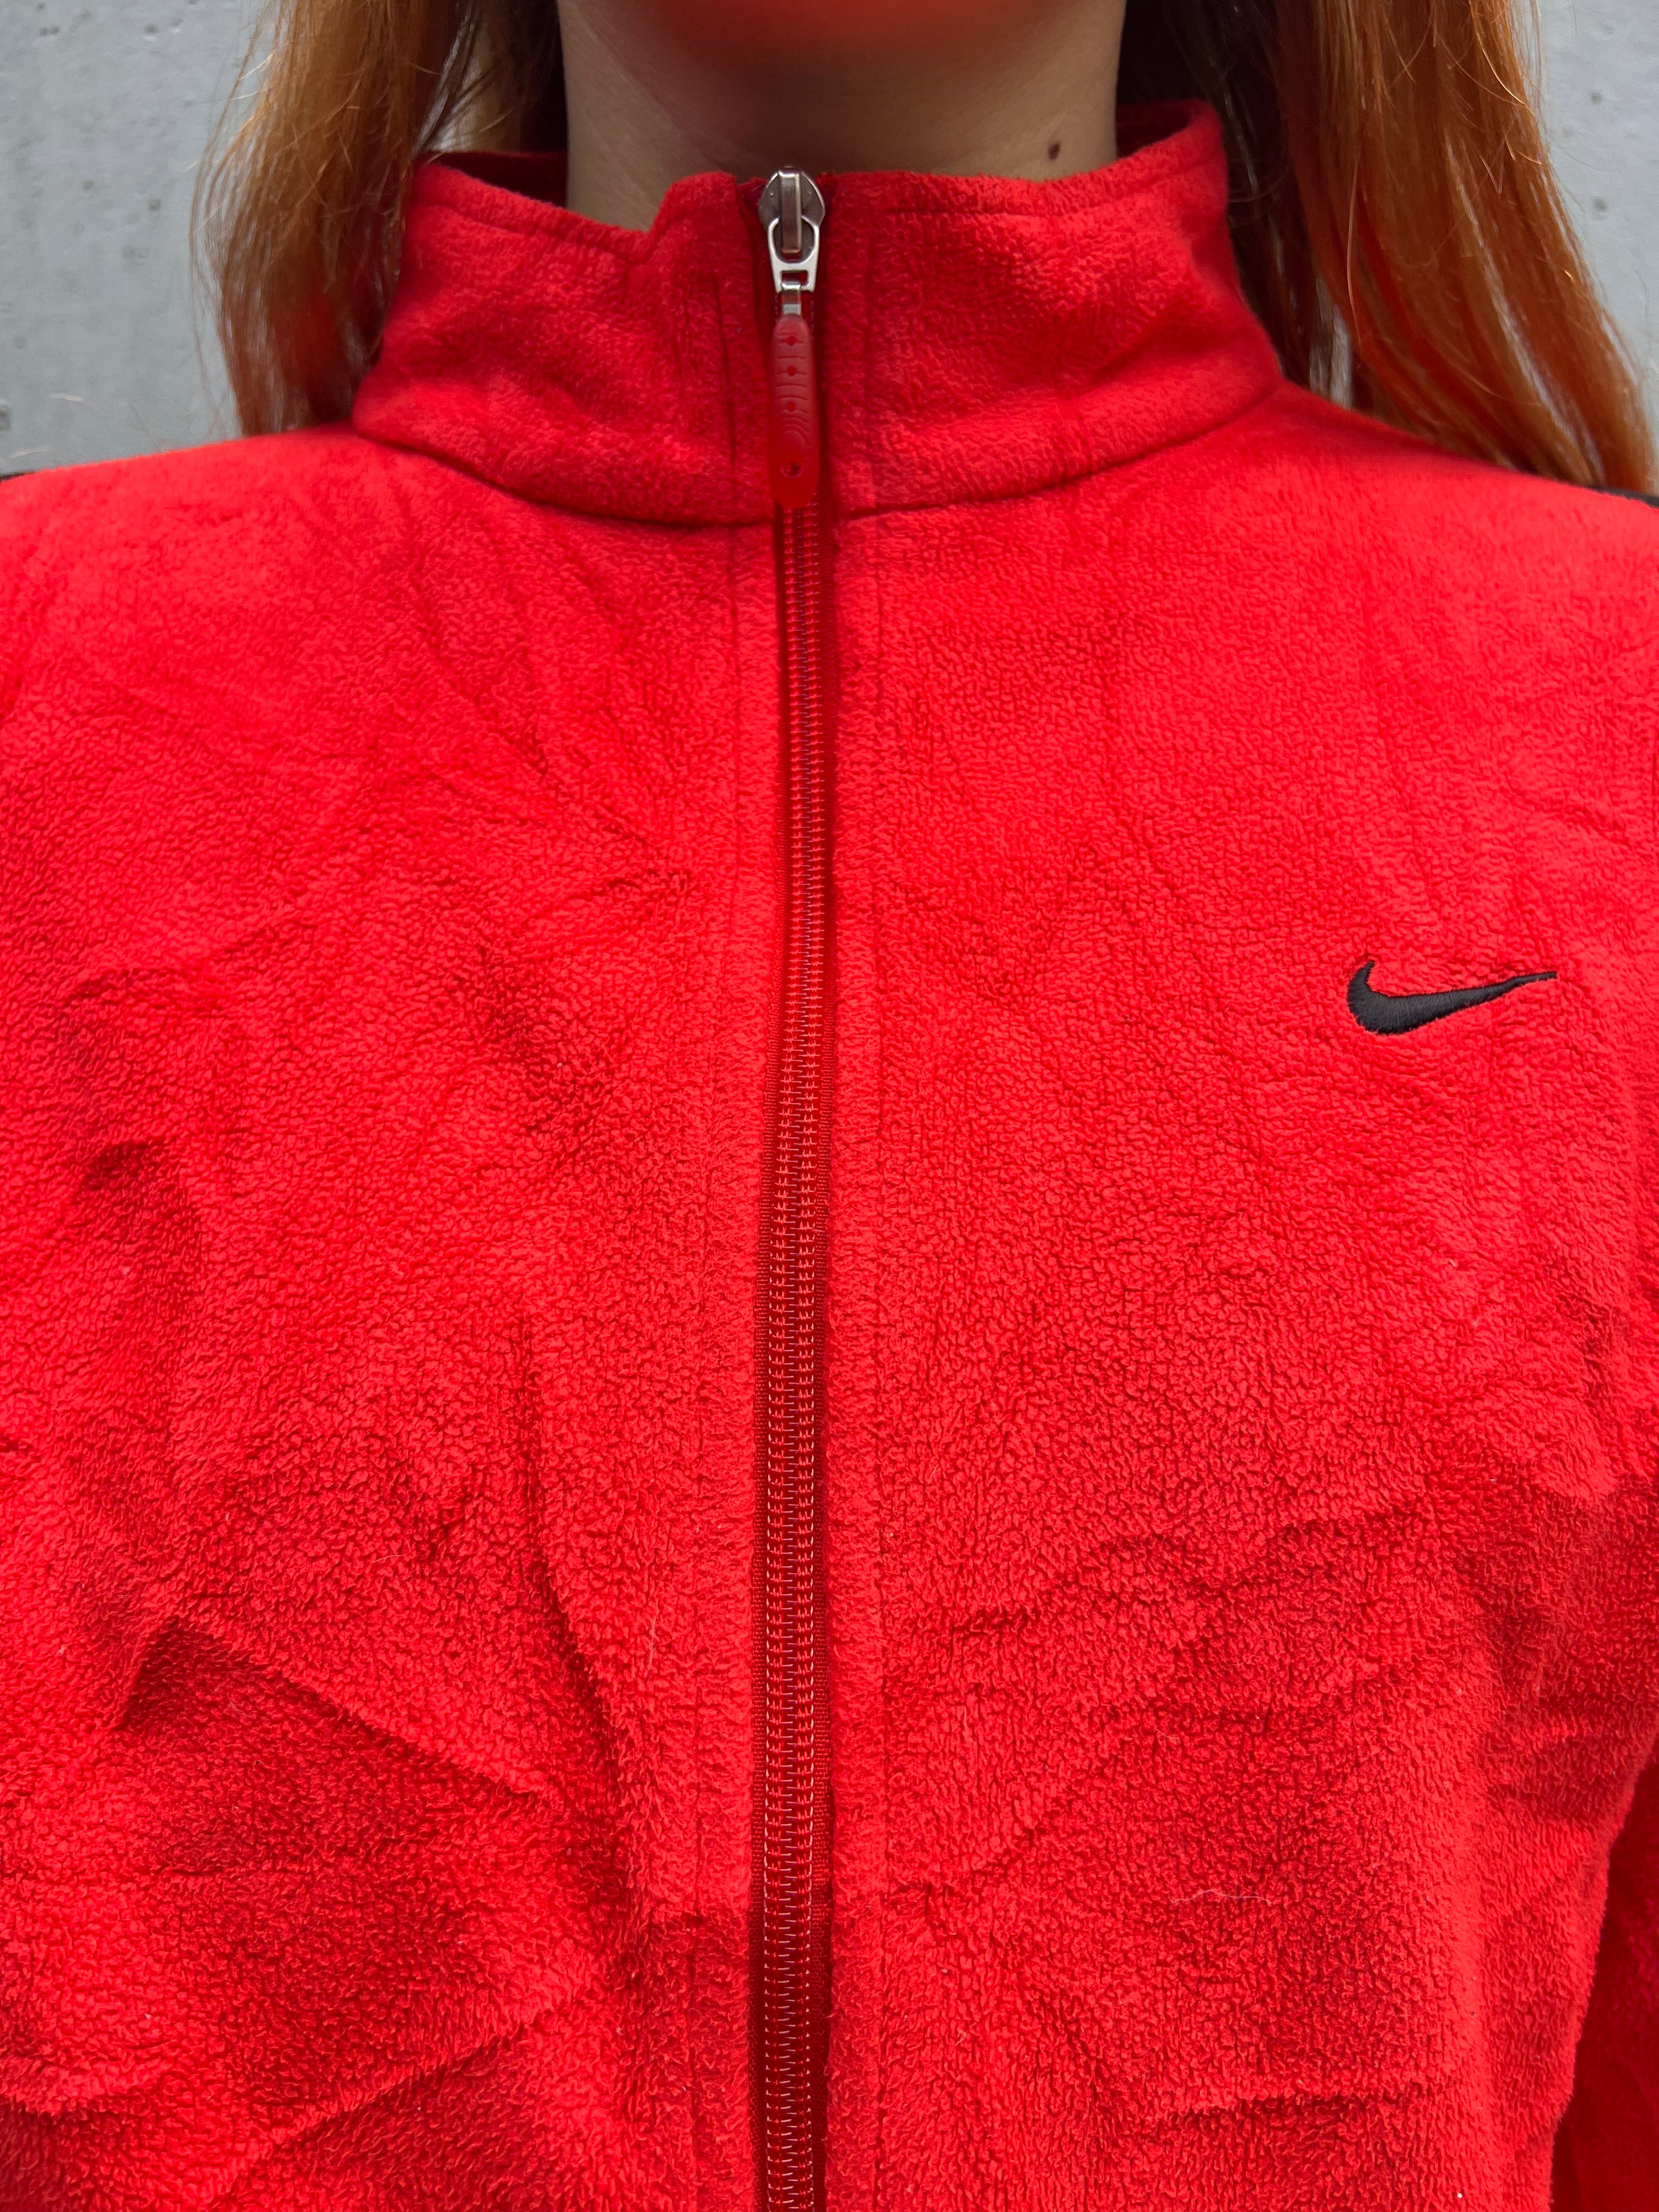 Vintage 2000s Nike Swoosh Fleece Jacket (S)